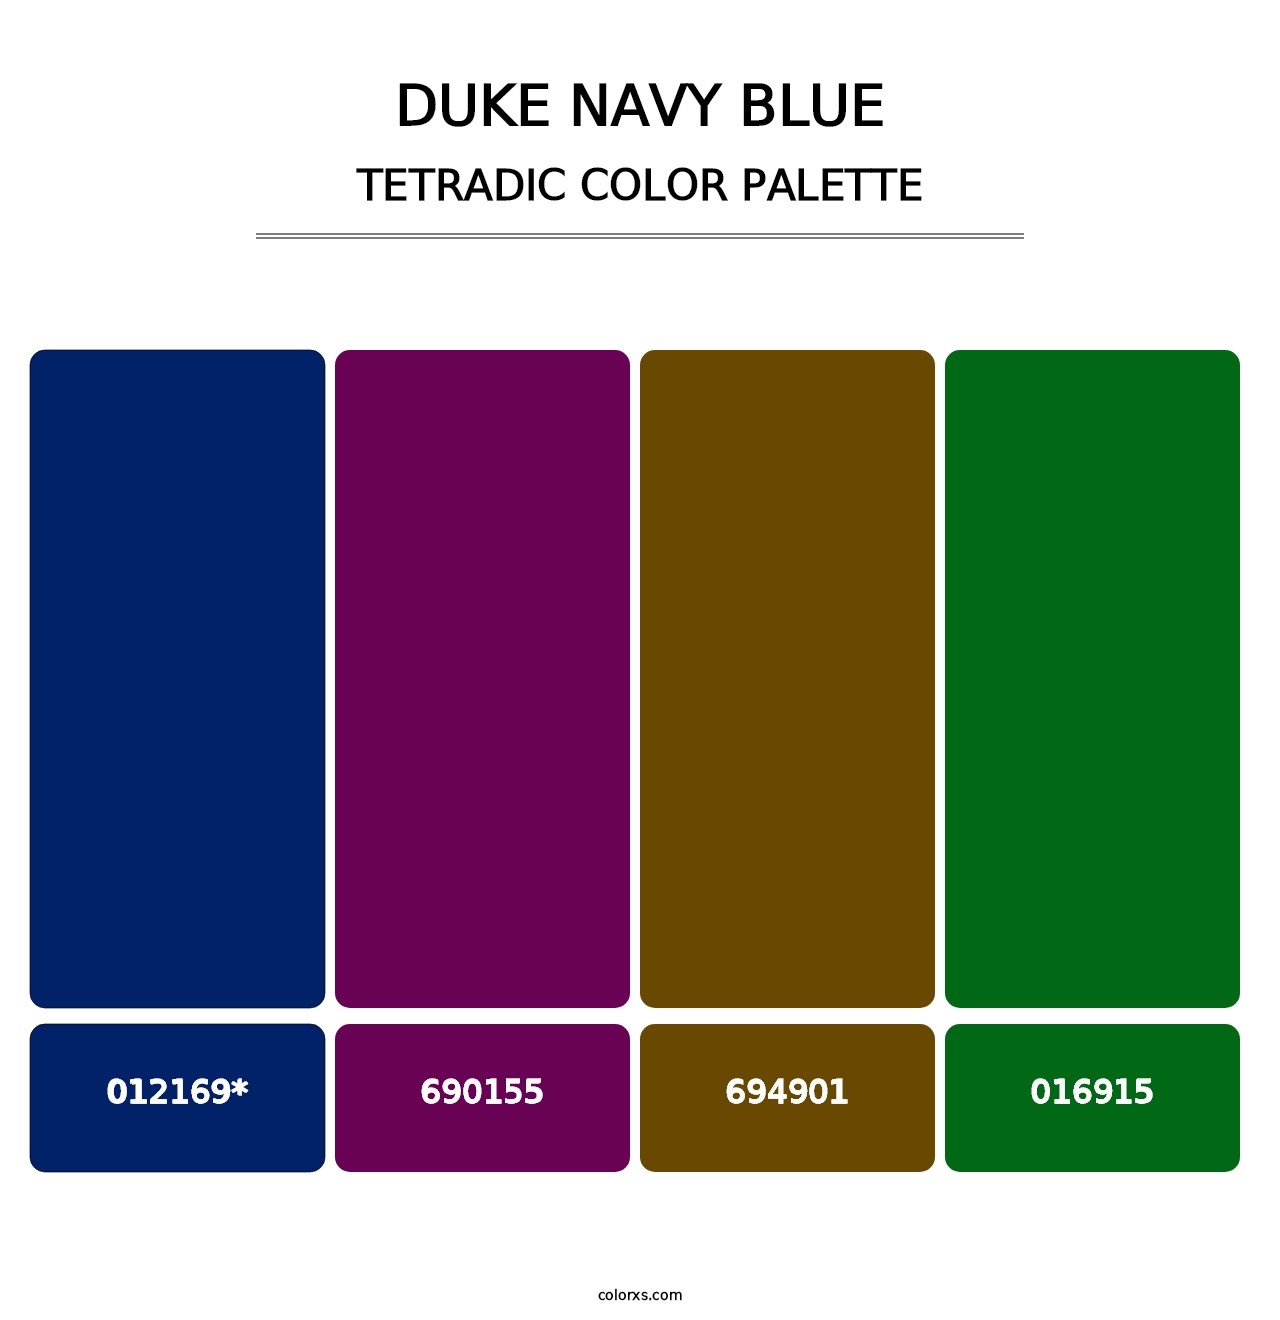 Duke Navy Blue - Tetradic Color Palette